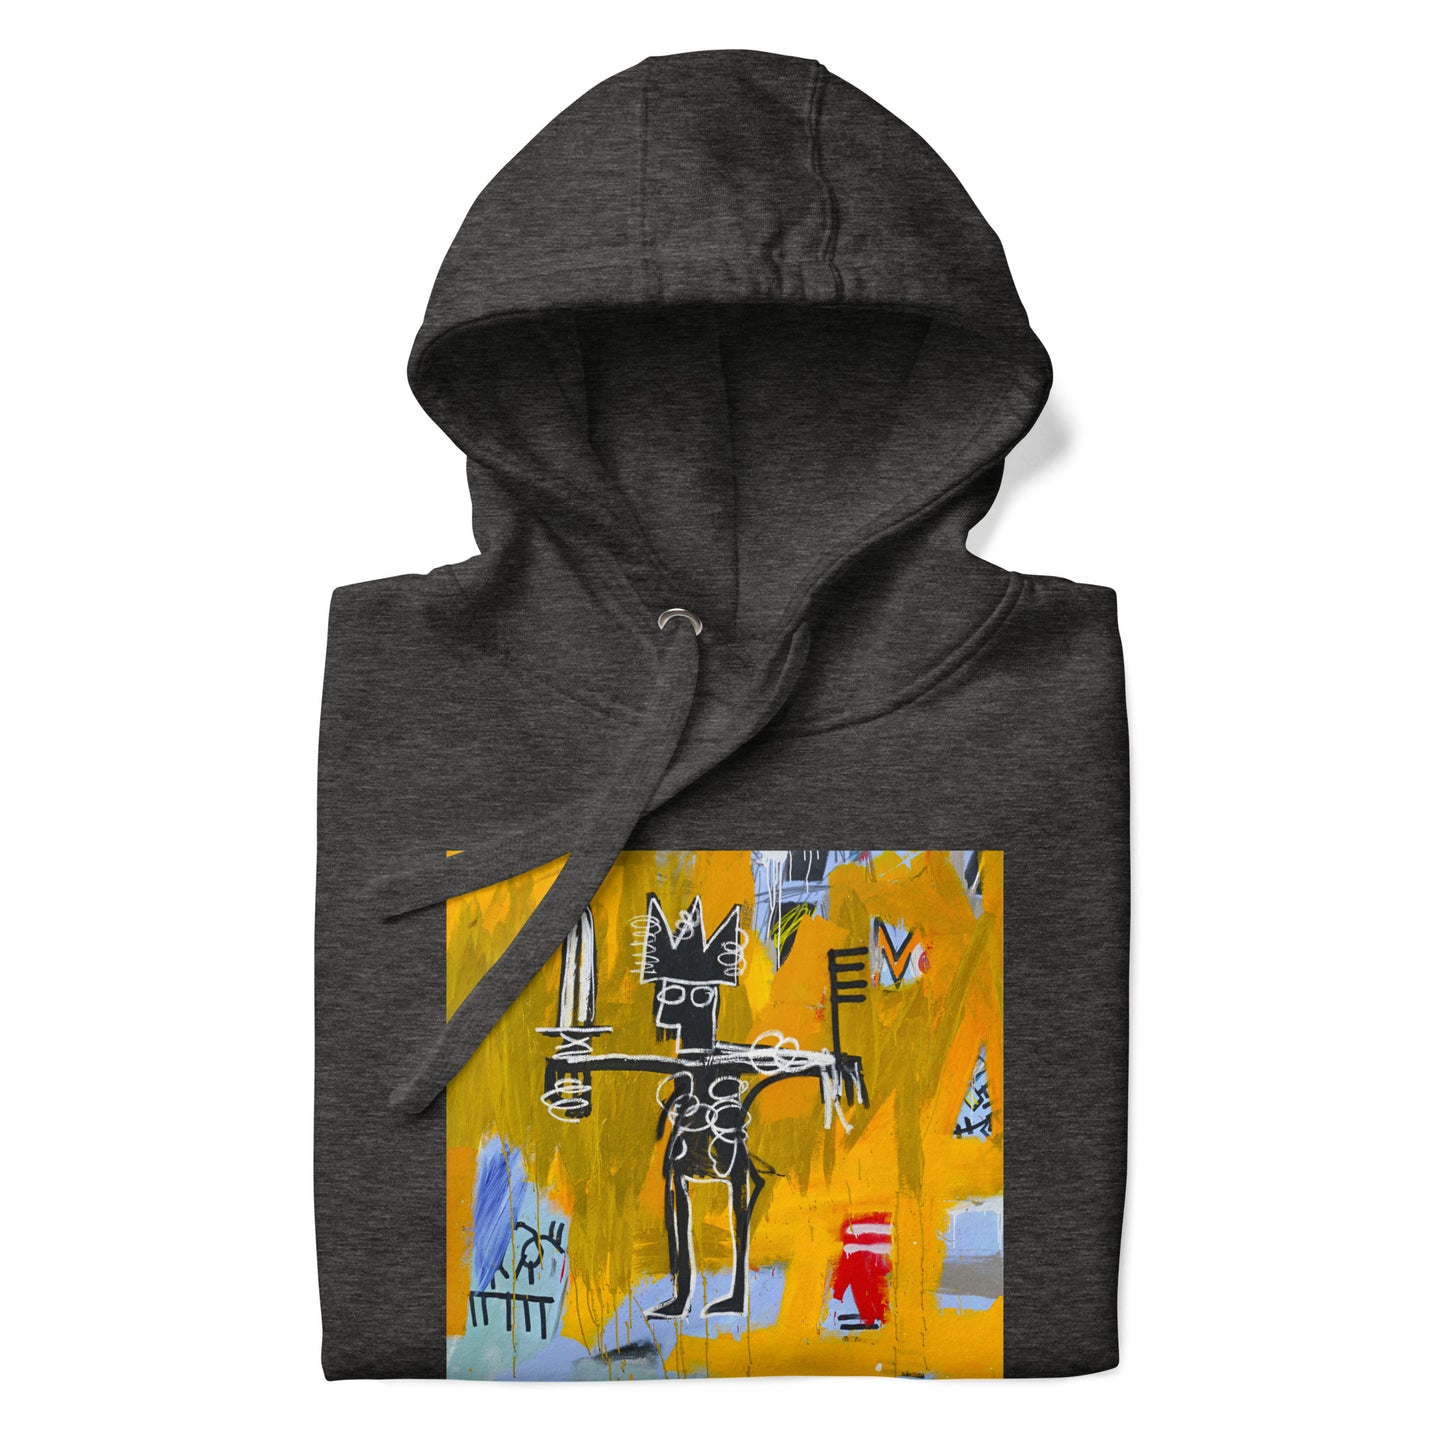 Jean-Michel Basquiat "Julius Caesar on Gold" Artwork Printed Premium Streetwear Sweatshirt Hoodie Charcoal Grey